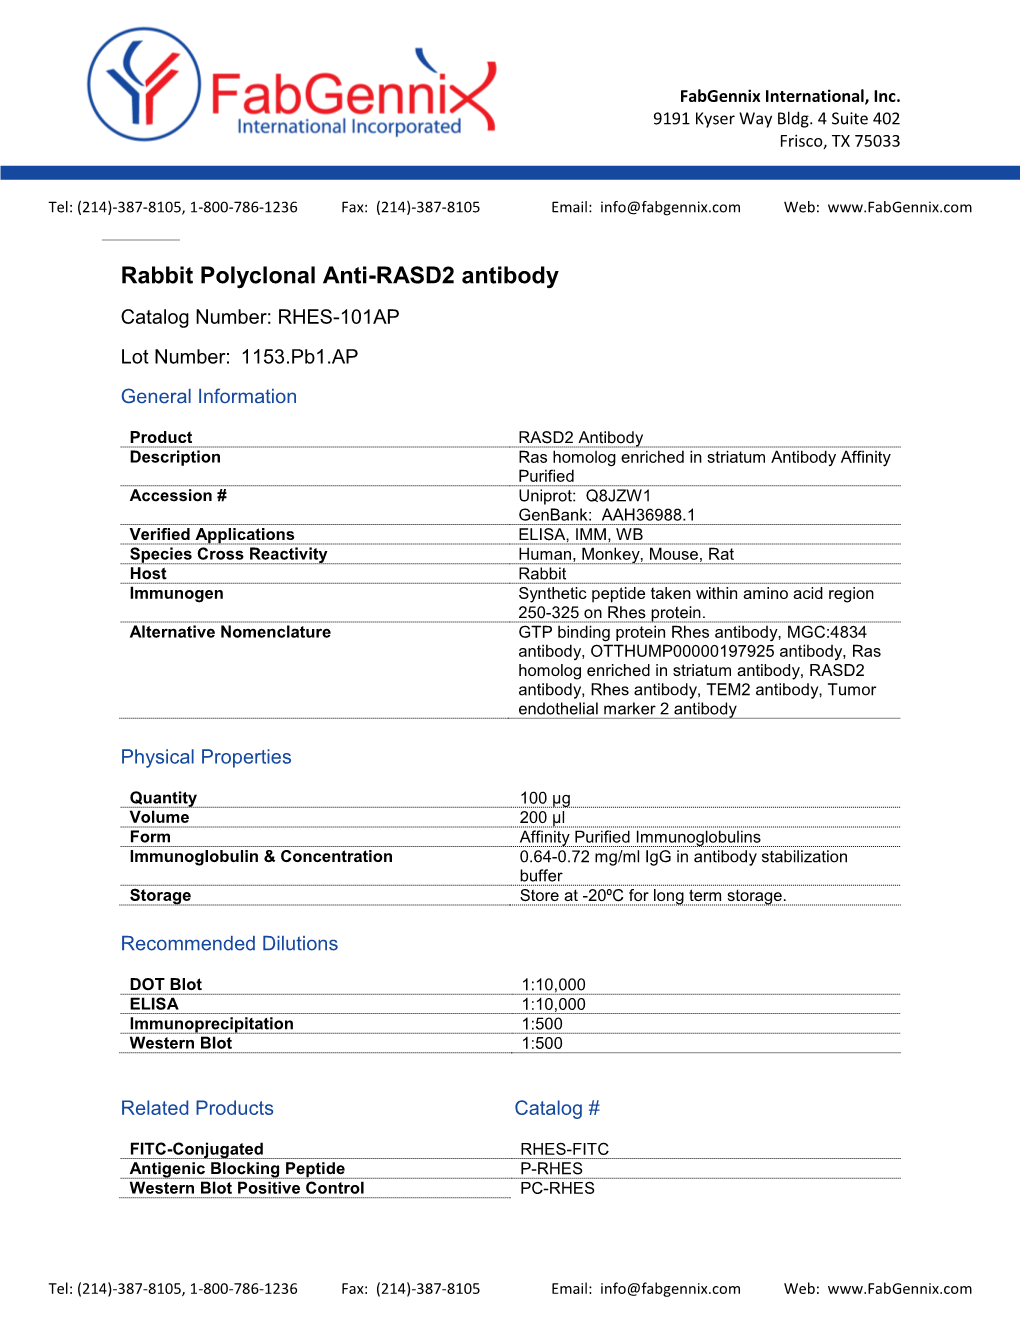 RASD2 Antibody Catalog Number: RHES-101AP Lot Number: 1153.Pb1.AP General Information